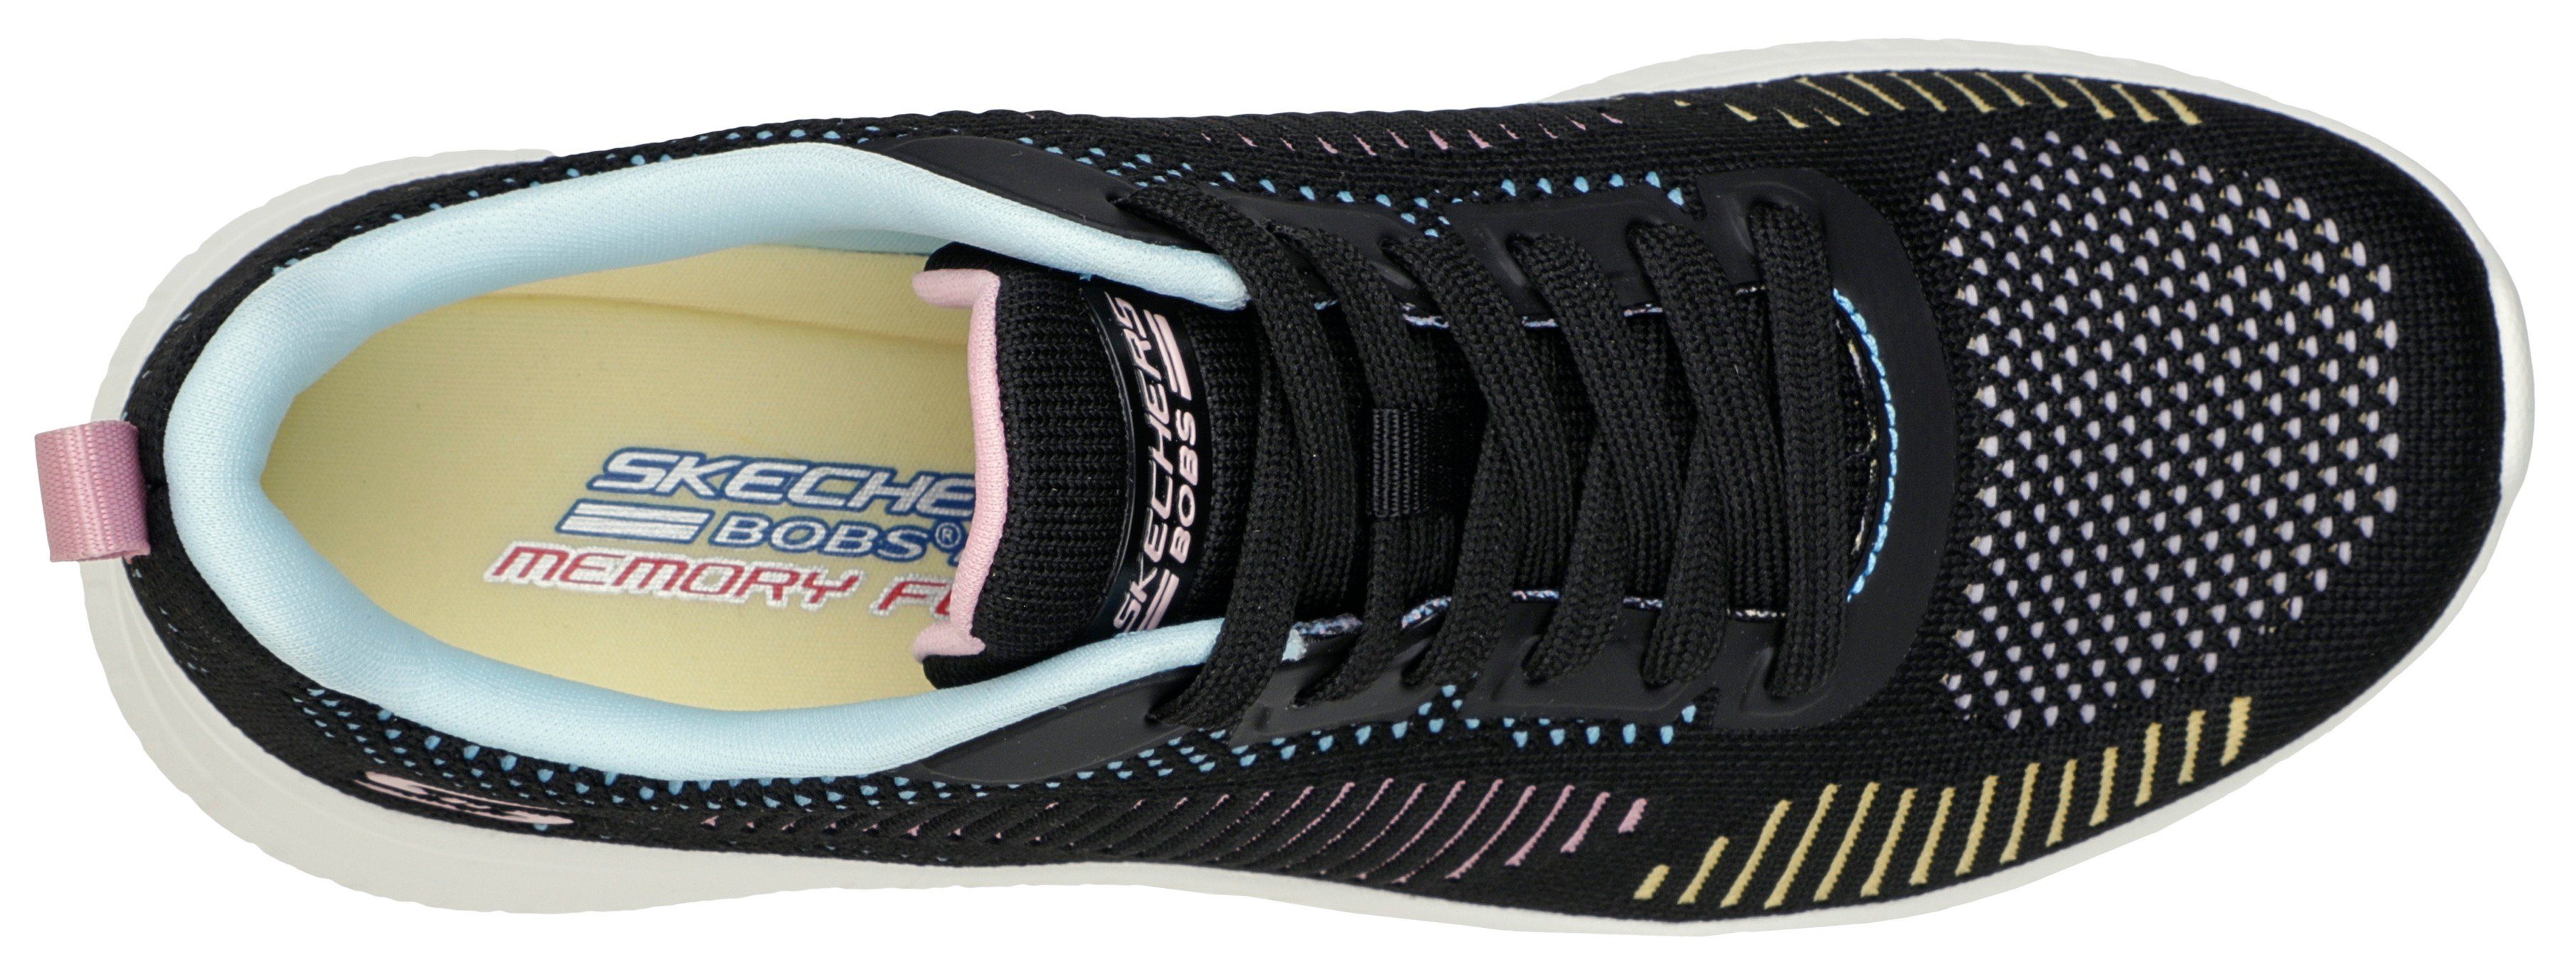 Skechers BOBS SQUAD CHAOS multi-schwarz Farbkombi in COLOR CRUSH toller Sneaker